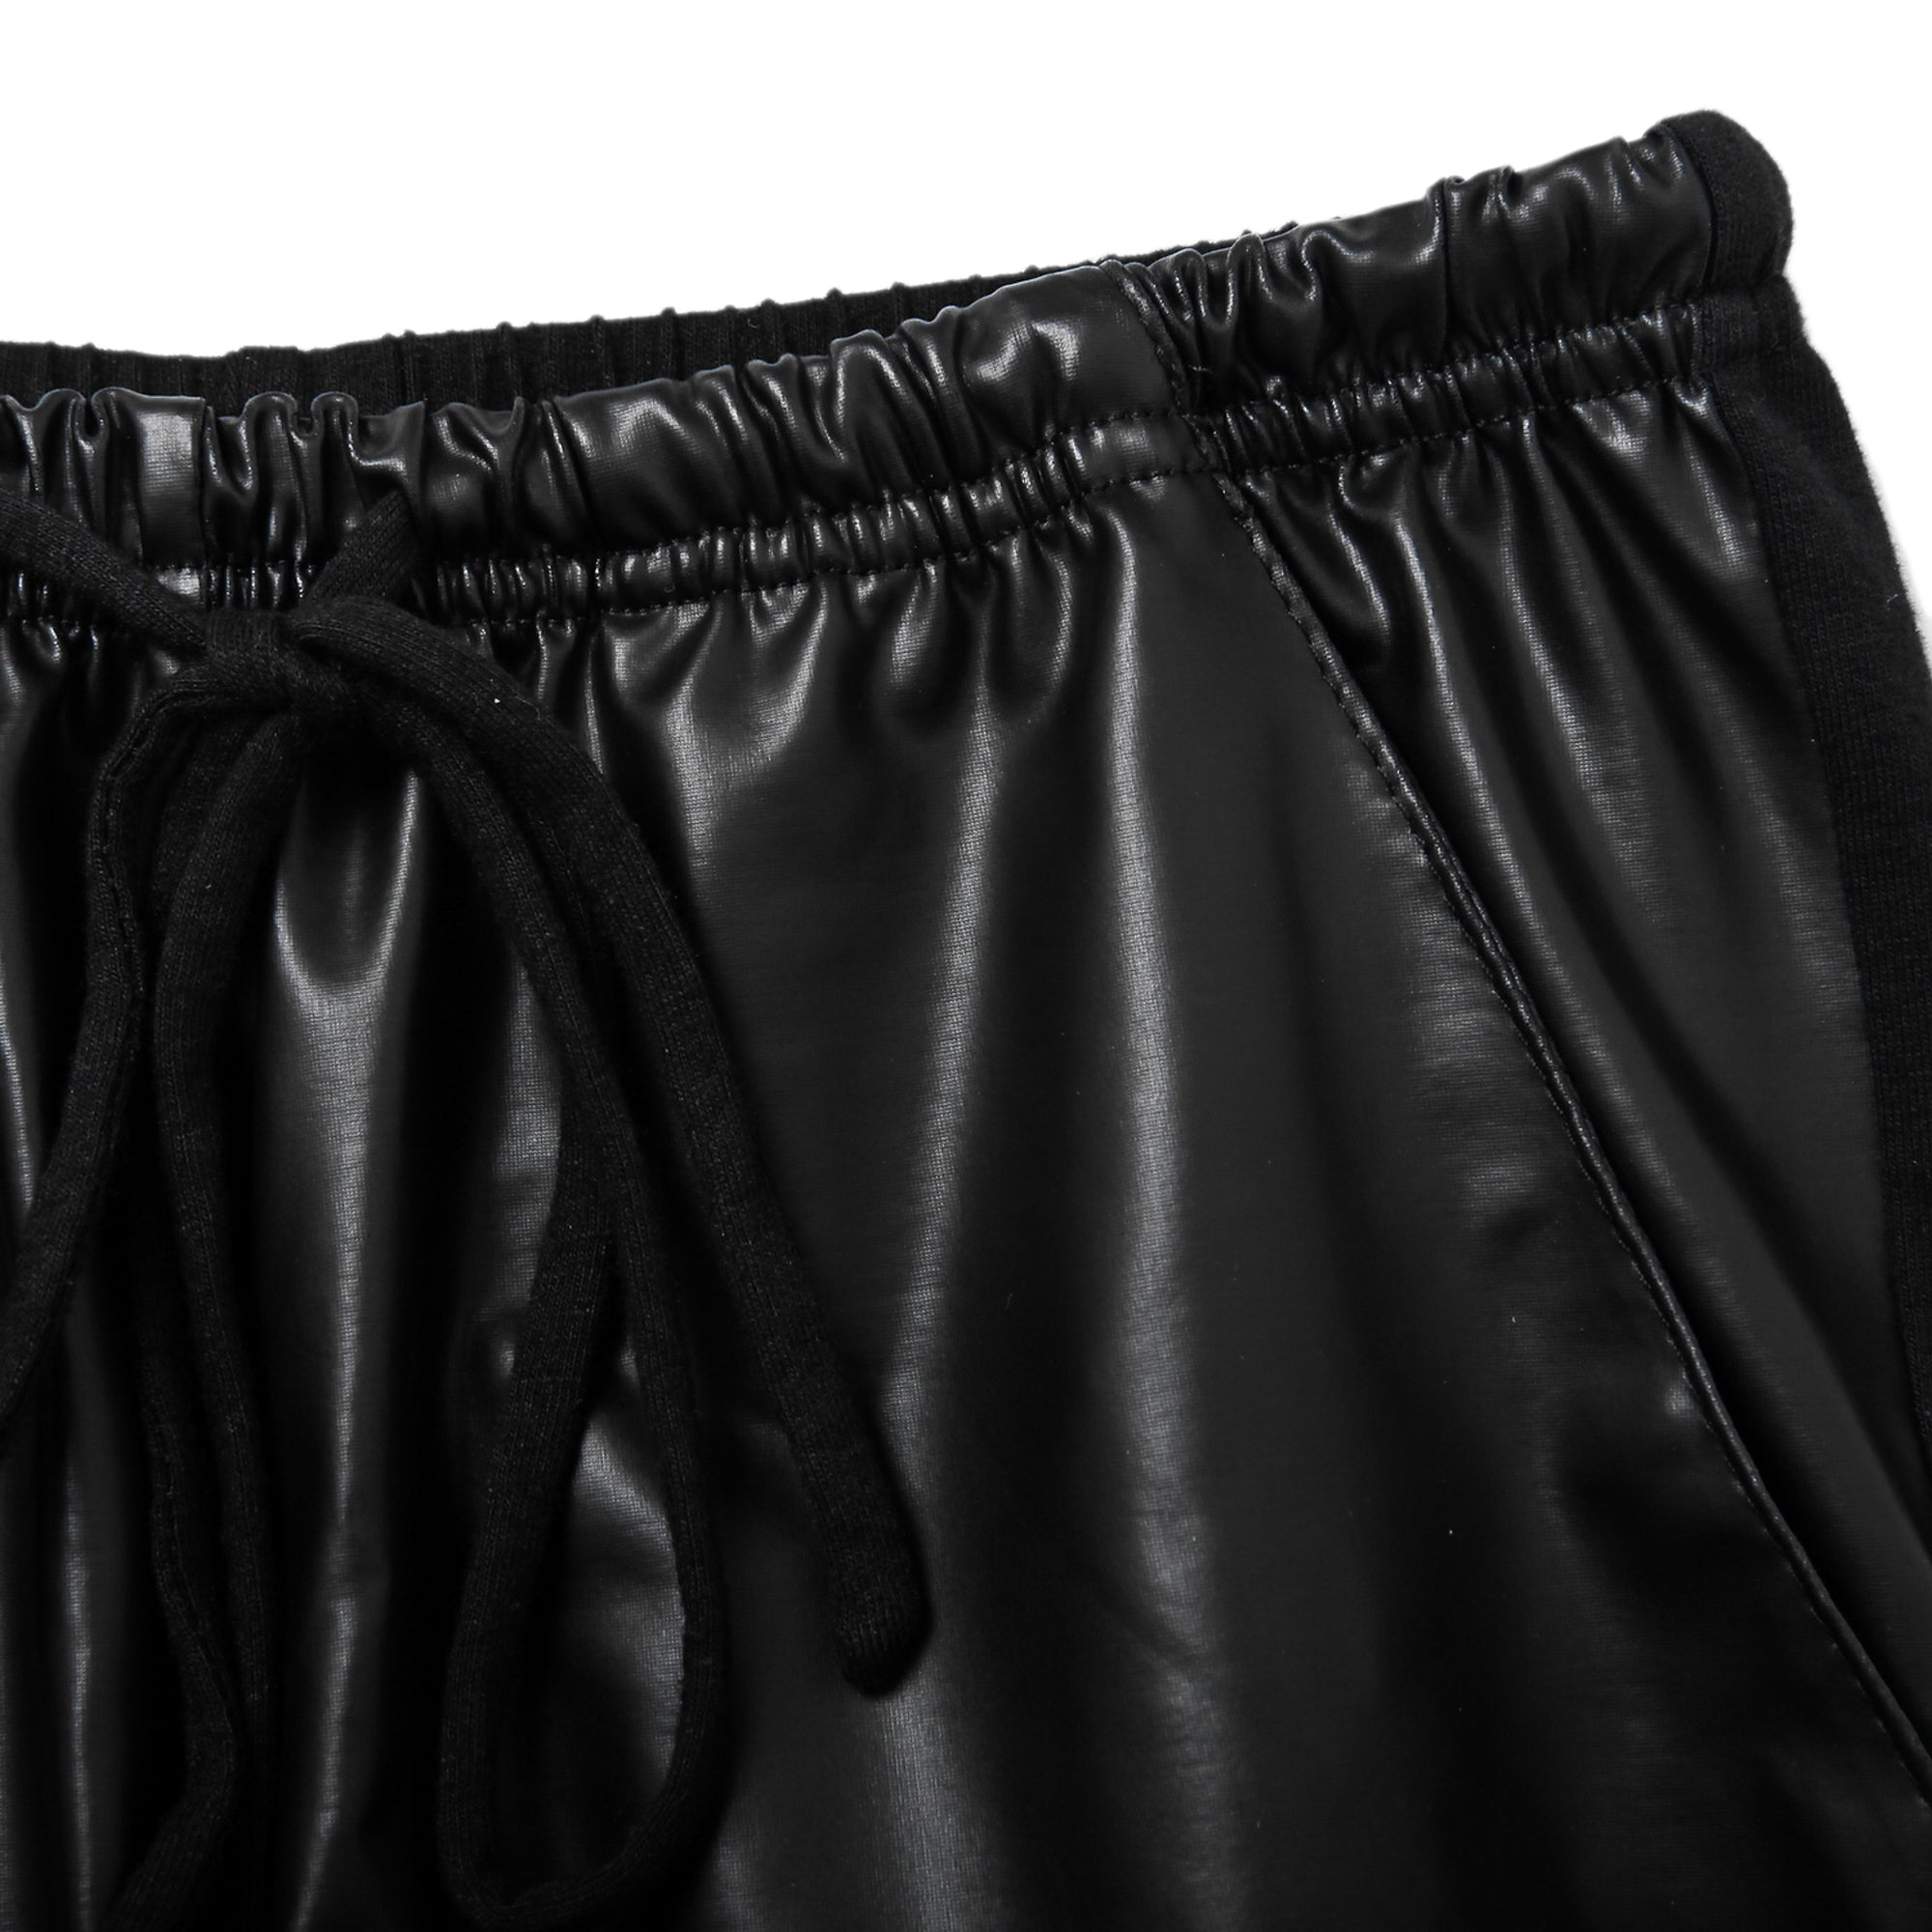 Rubberfashion Glanz Leggings Damen - sexy glänzende Leggins 80er Jahre - mit Raffung vorn und Tasche seitlich für Frauen